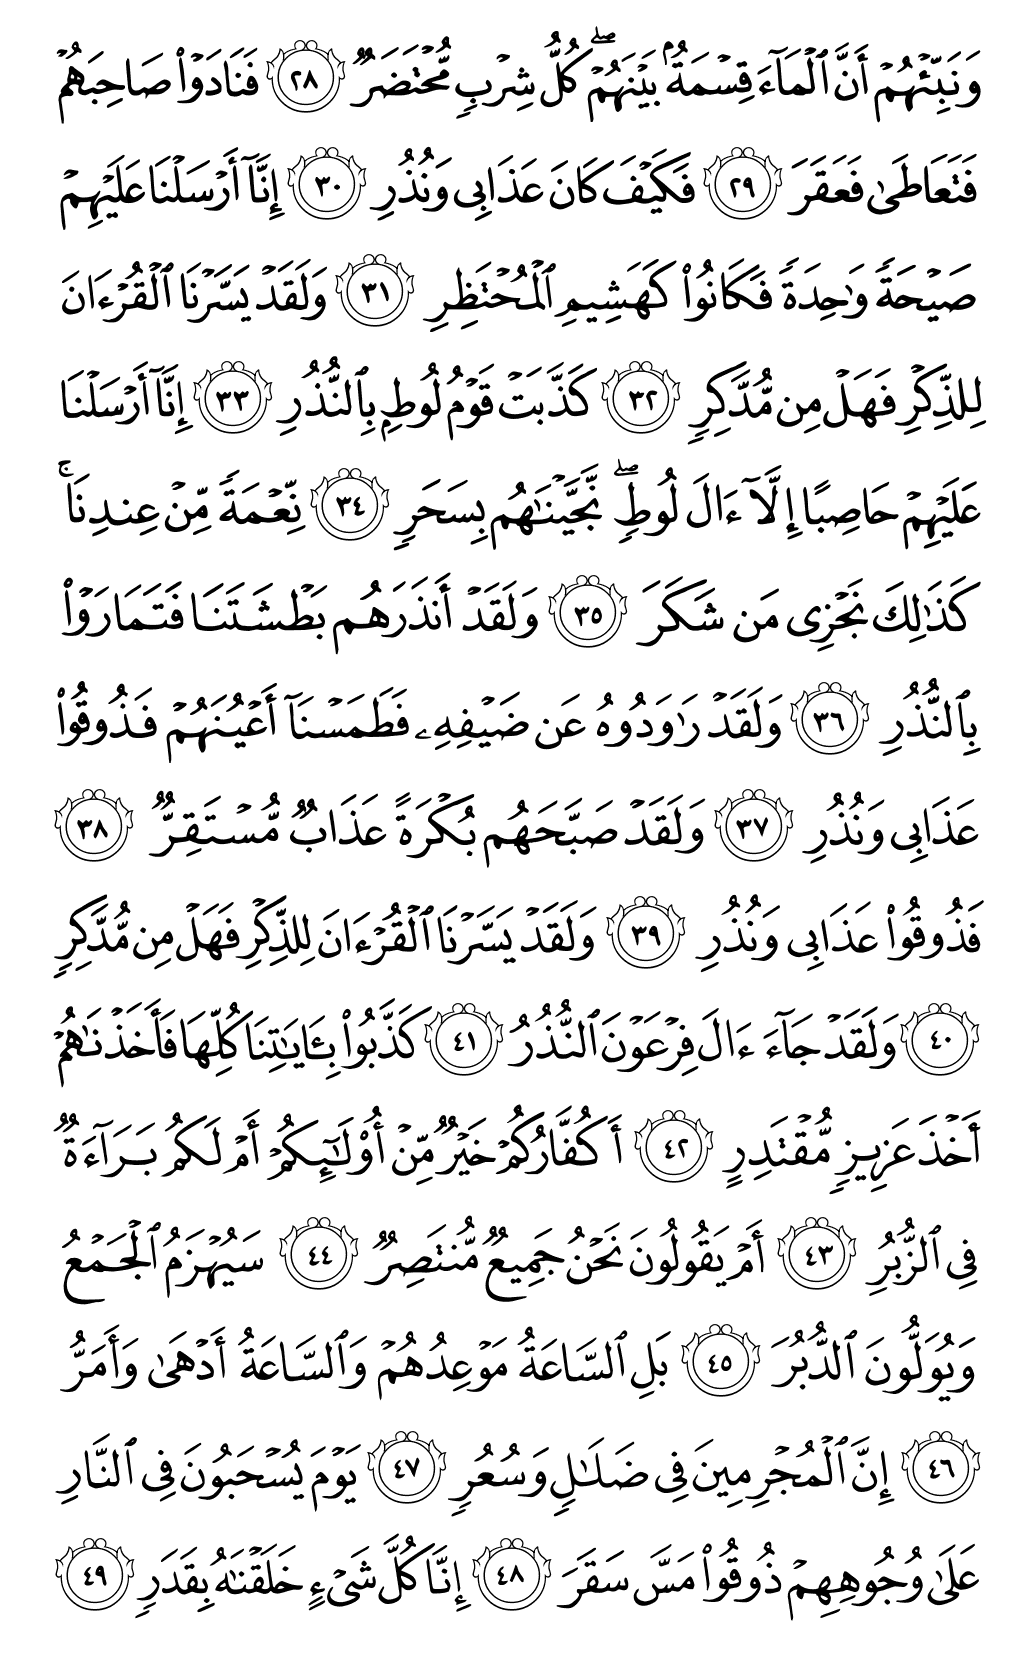 الصفحة رقم 530 من القرآن الكريم